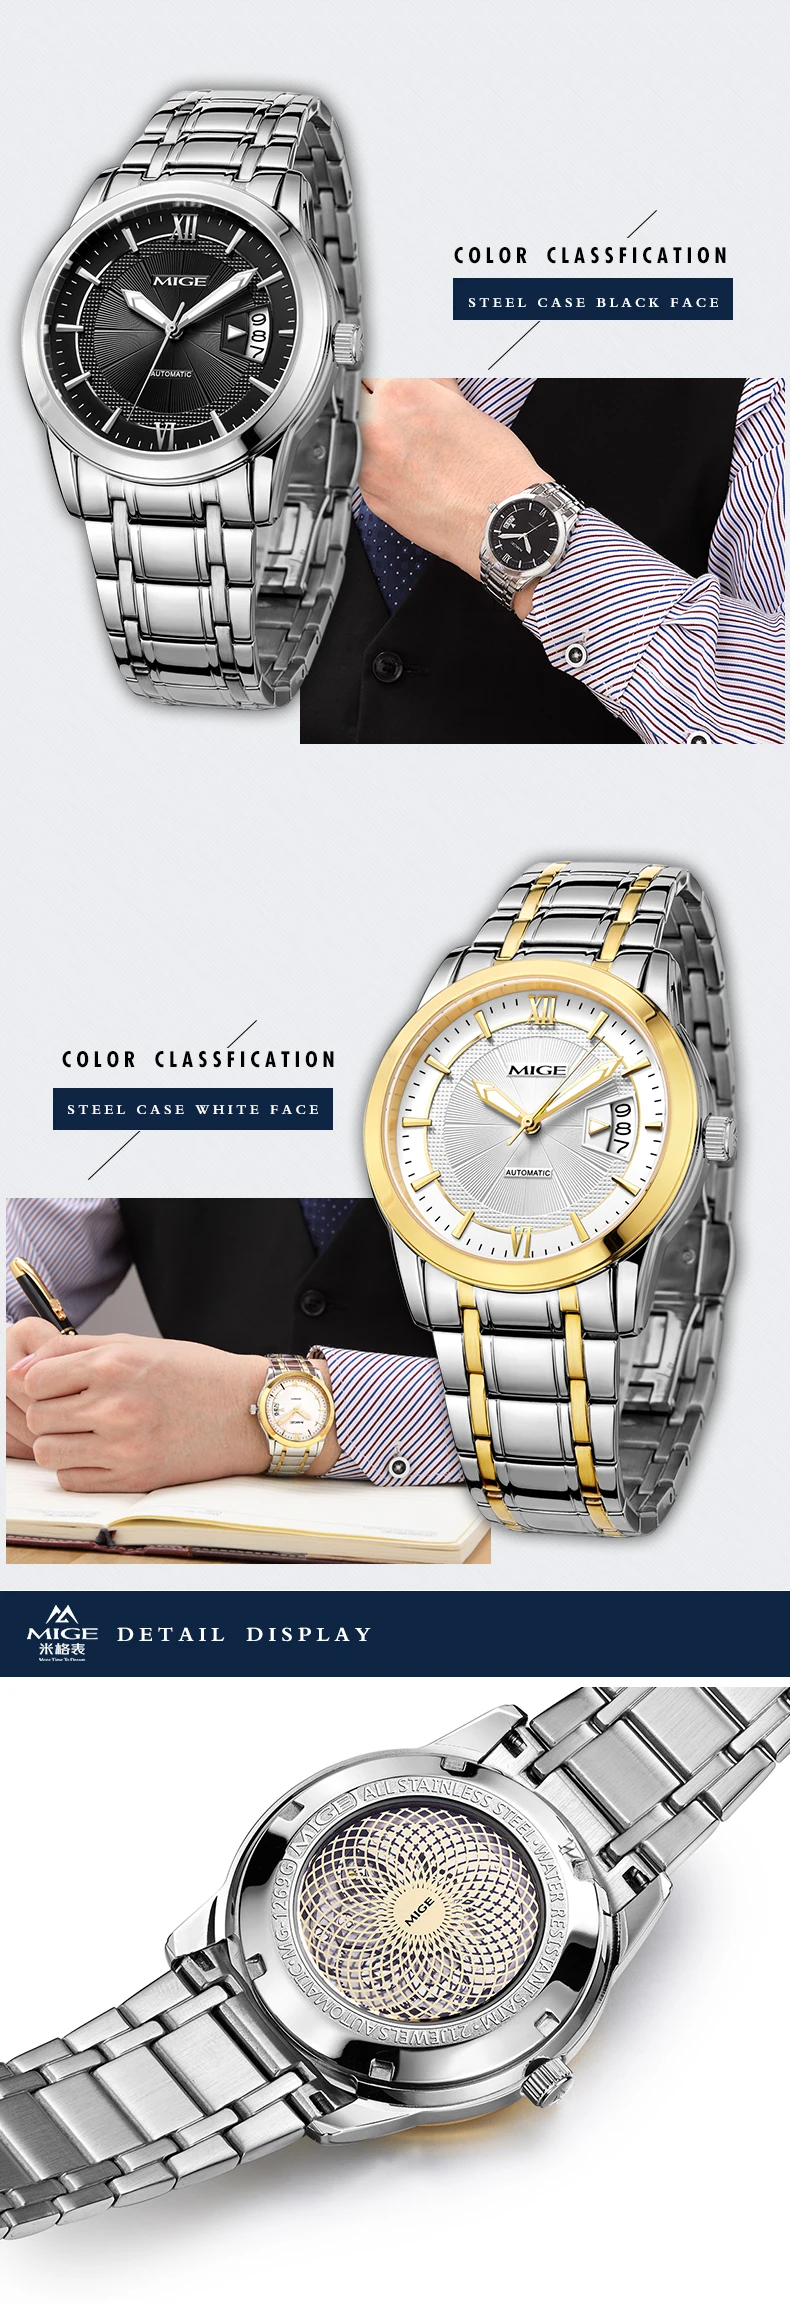 2018 новый бренд класса люкс лучших Скелет Relogio masculino часы Сталь ремешок черный, белый цвет автоматический Водонепроницаемый человек часы